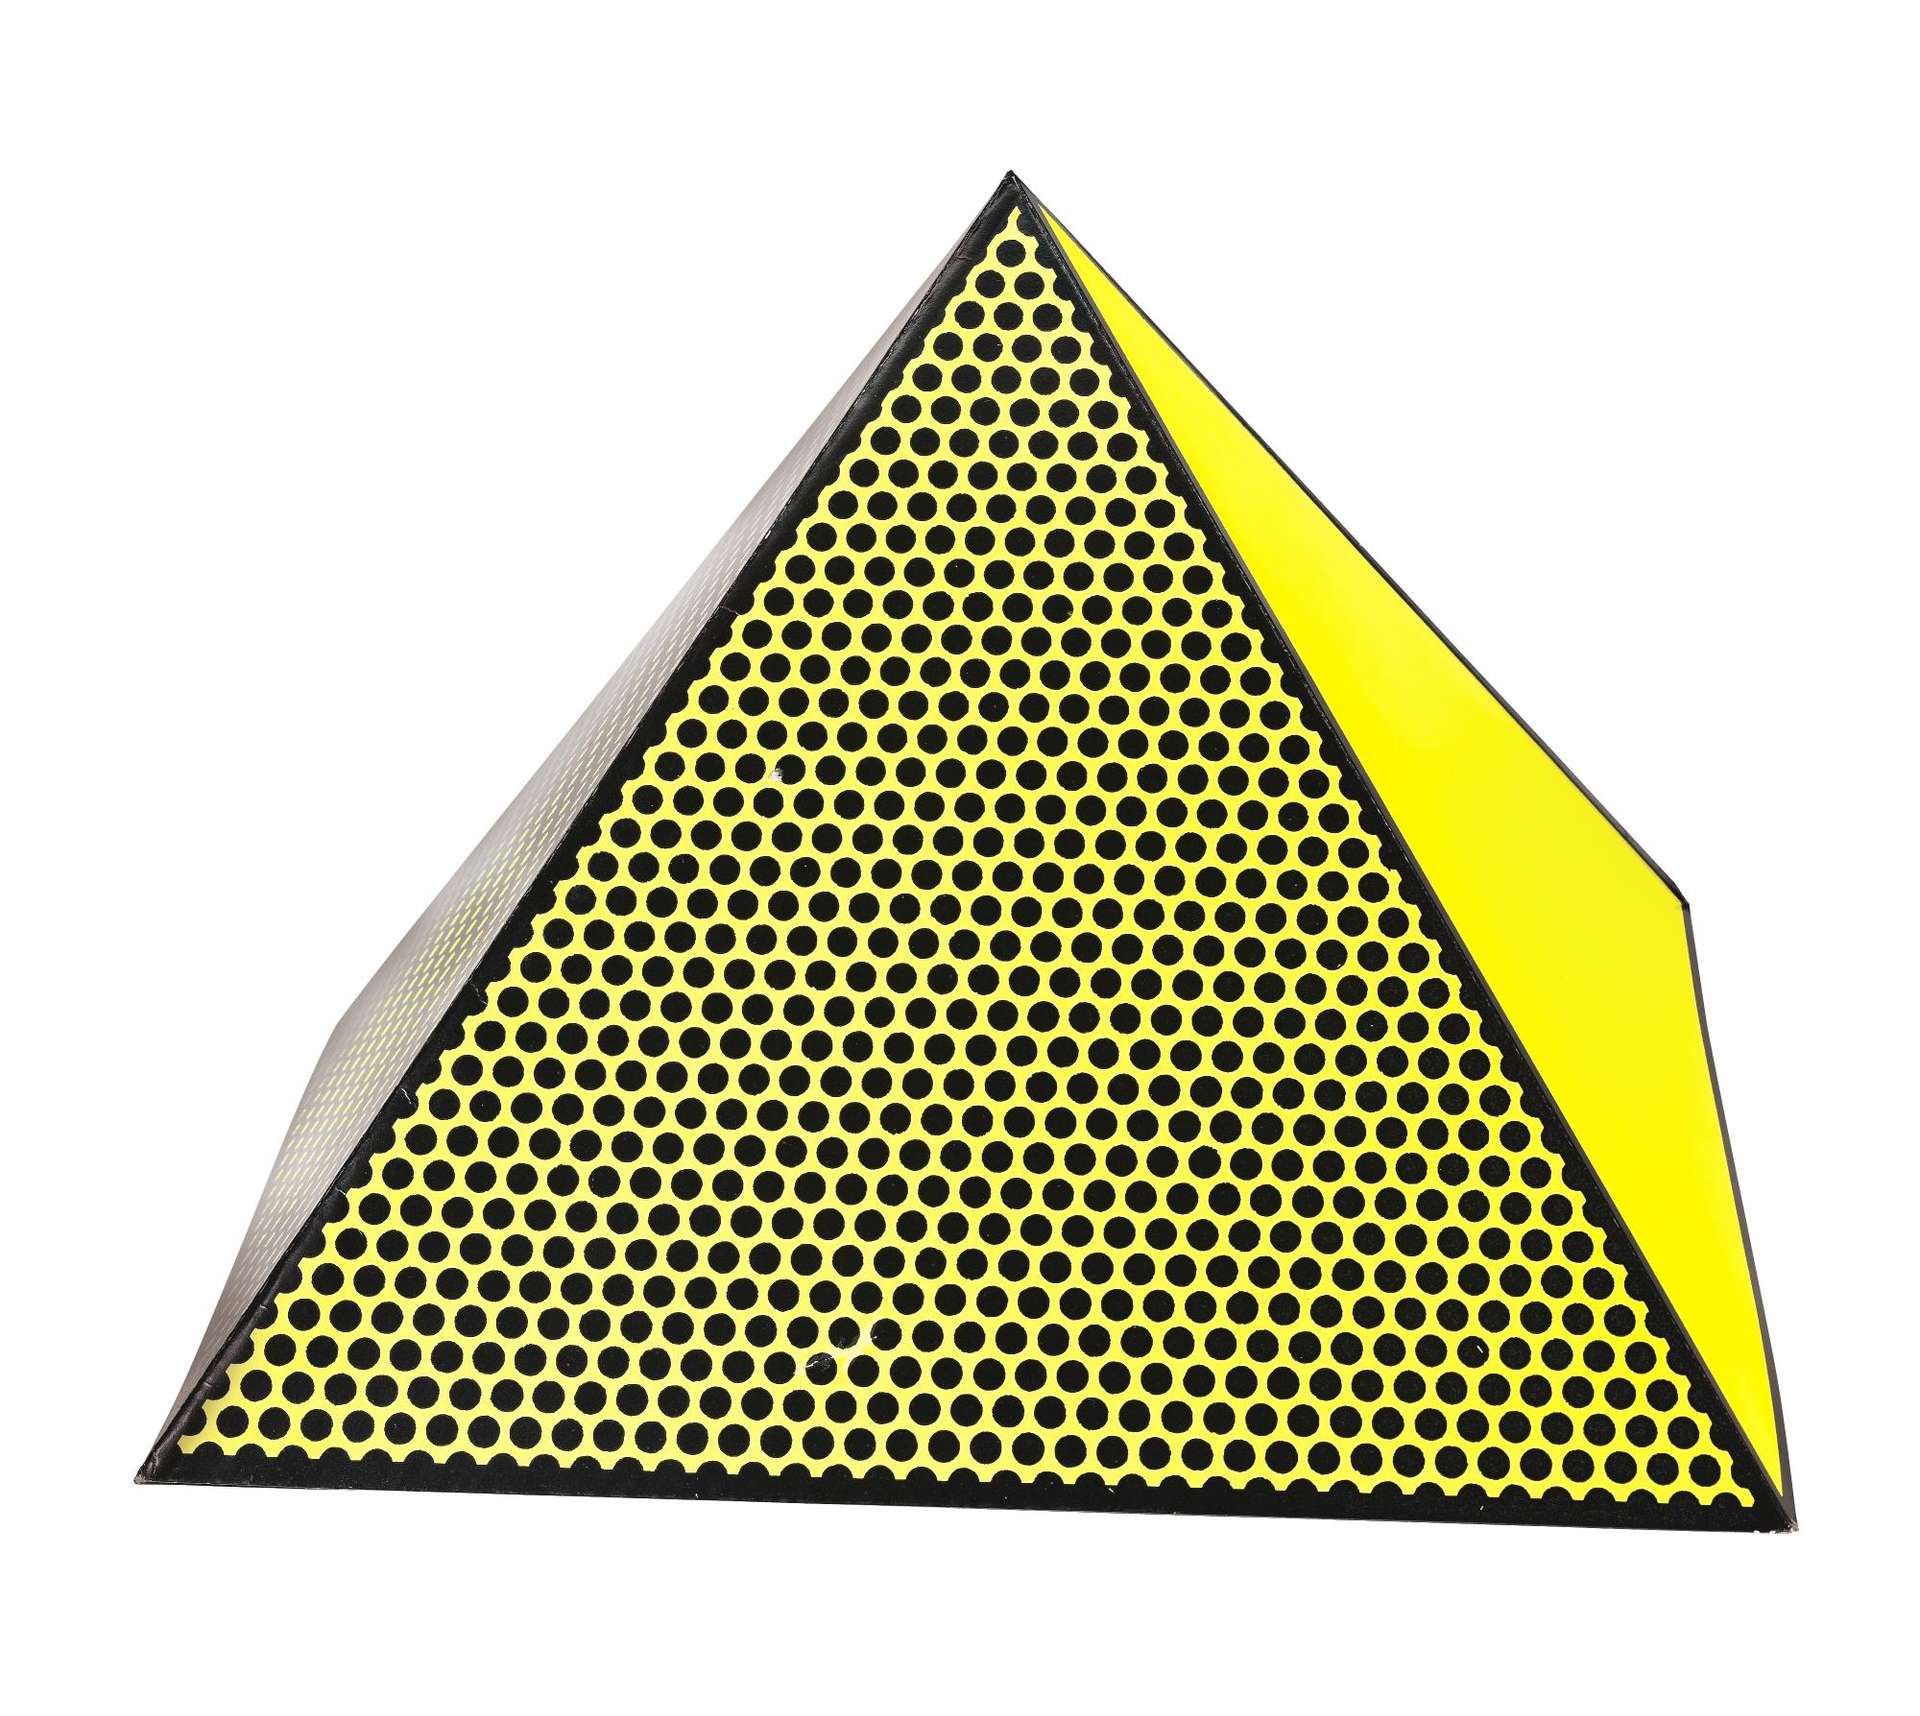 Roy Lichtenstein: Pyramid - Signed Print